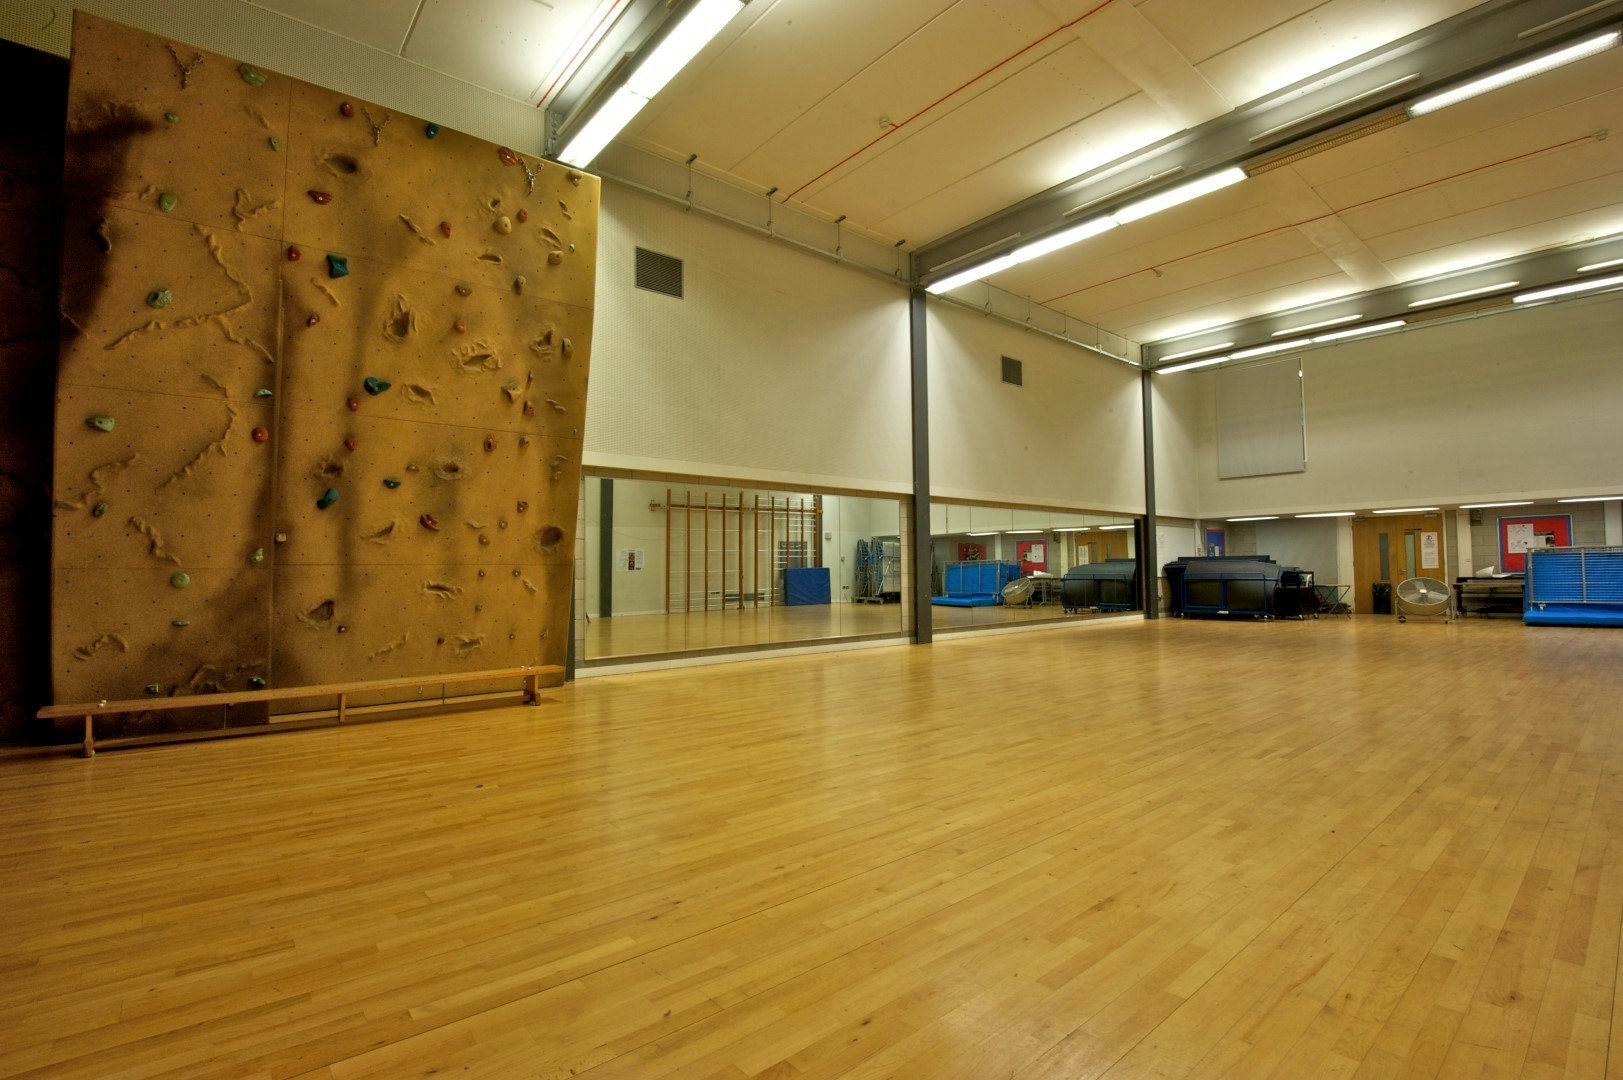 Haverstock School - Dance Studio image 1